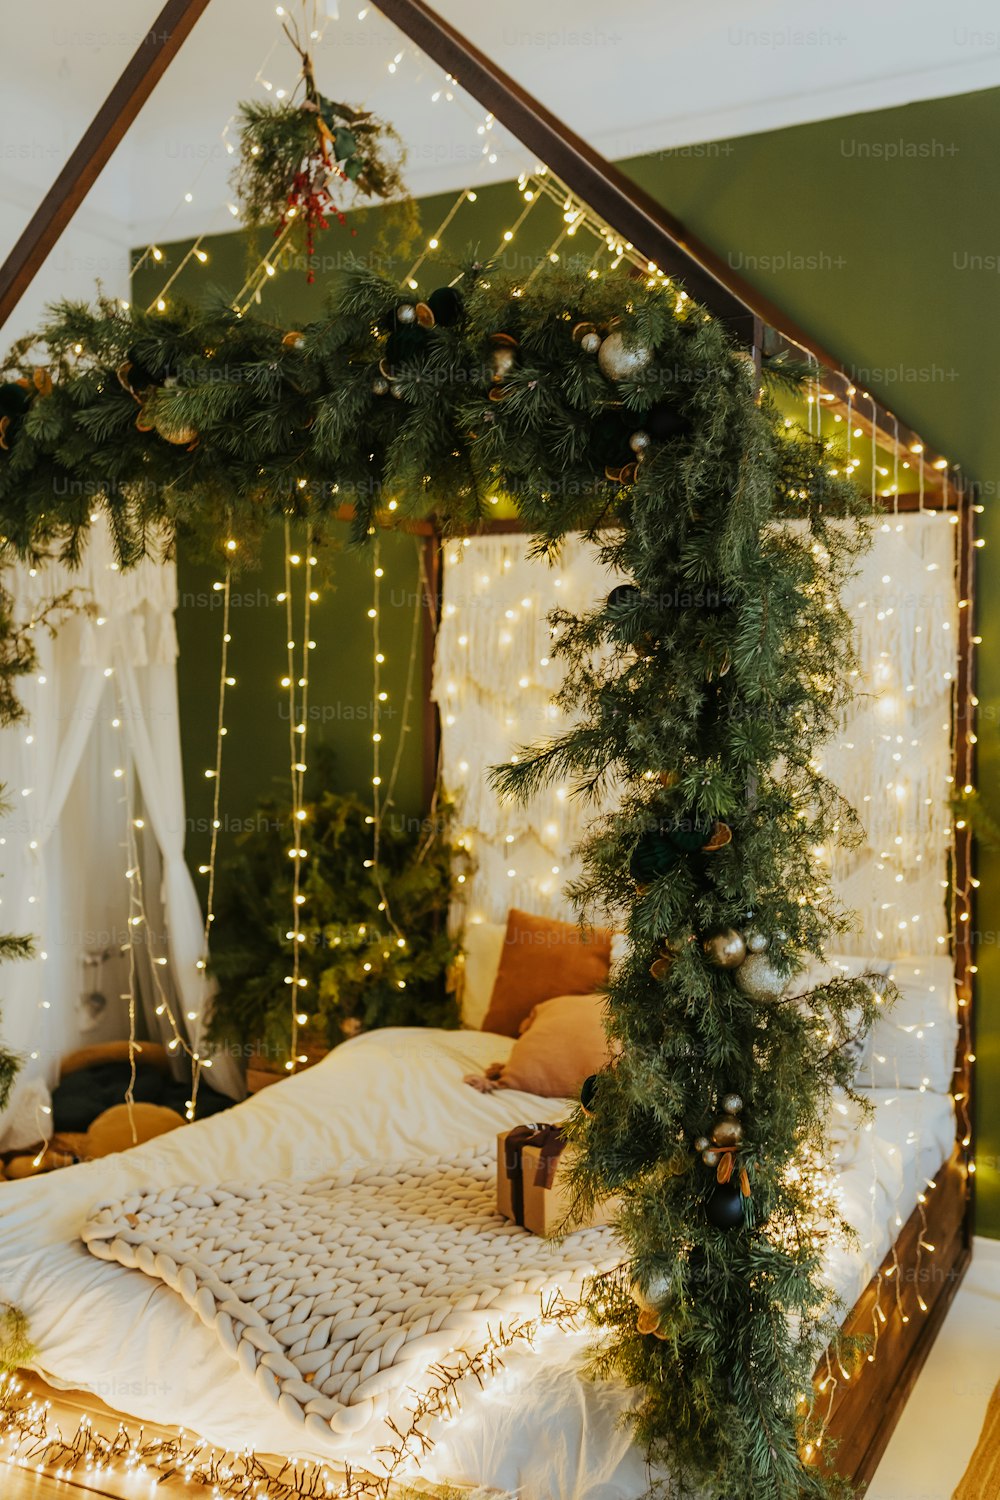 크리스마스 조명으로 덮인 캐노피가 있는 ��침대